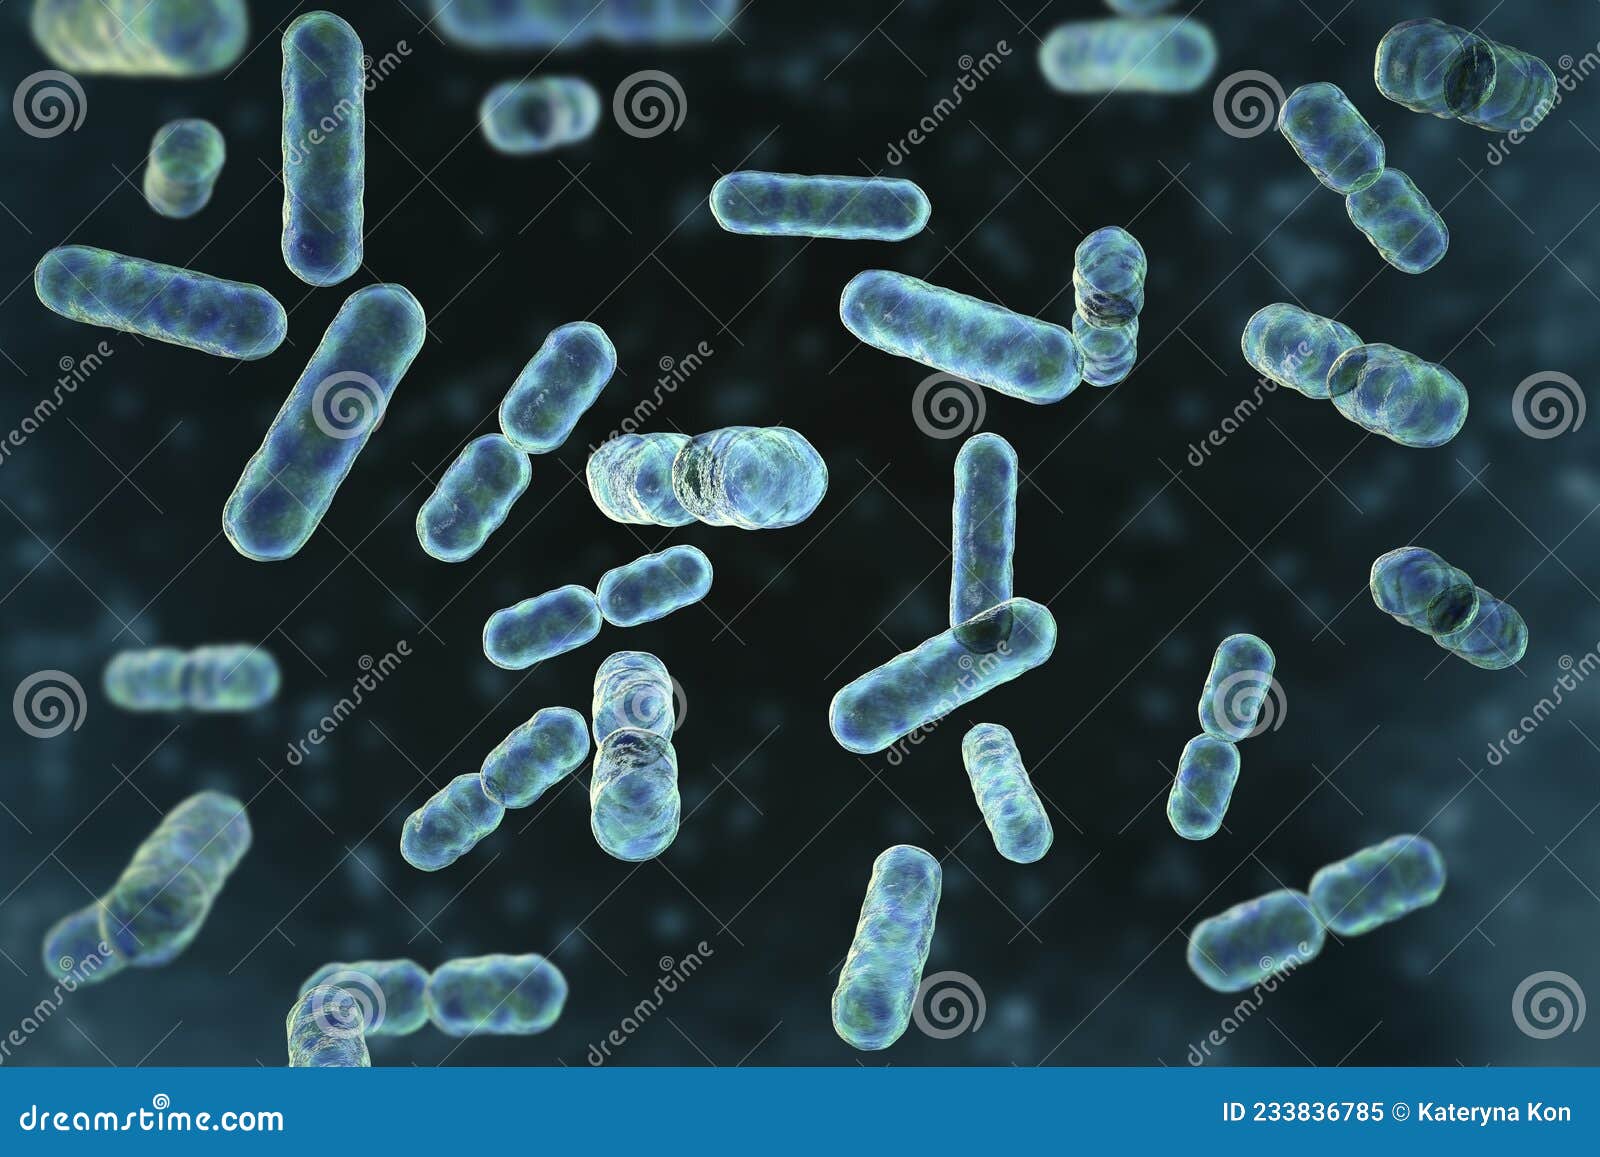 bacteria bacteroides, 3d 